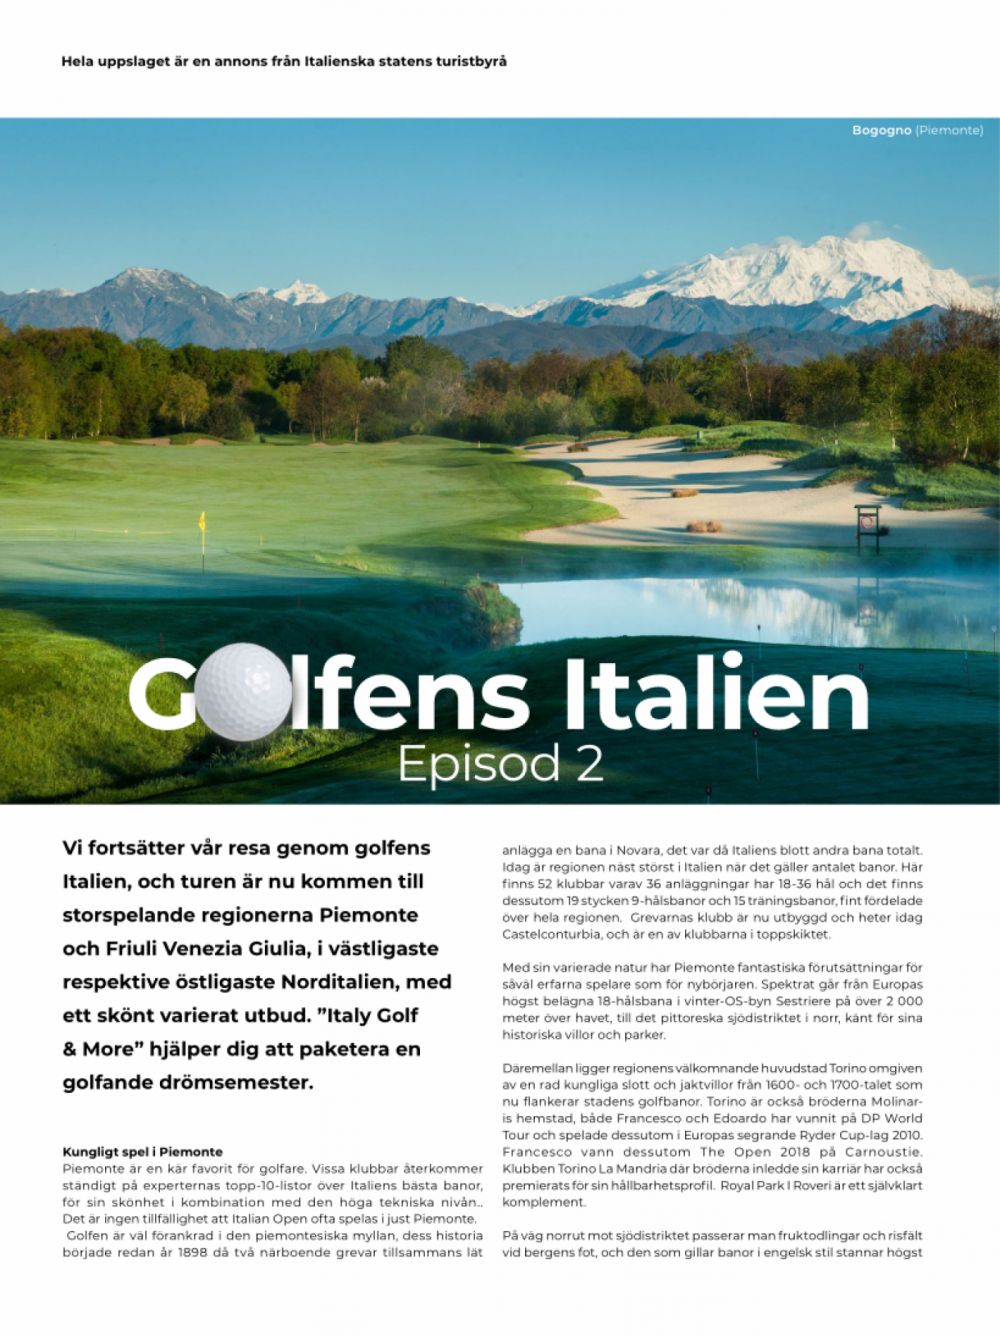 Scopriamo l'Italia golfistica - Piemonte & FVG - Stoccolma